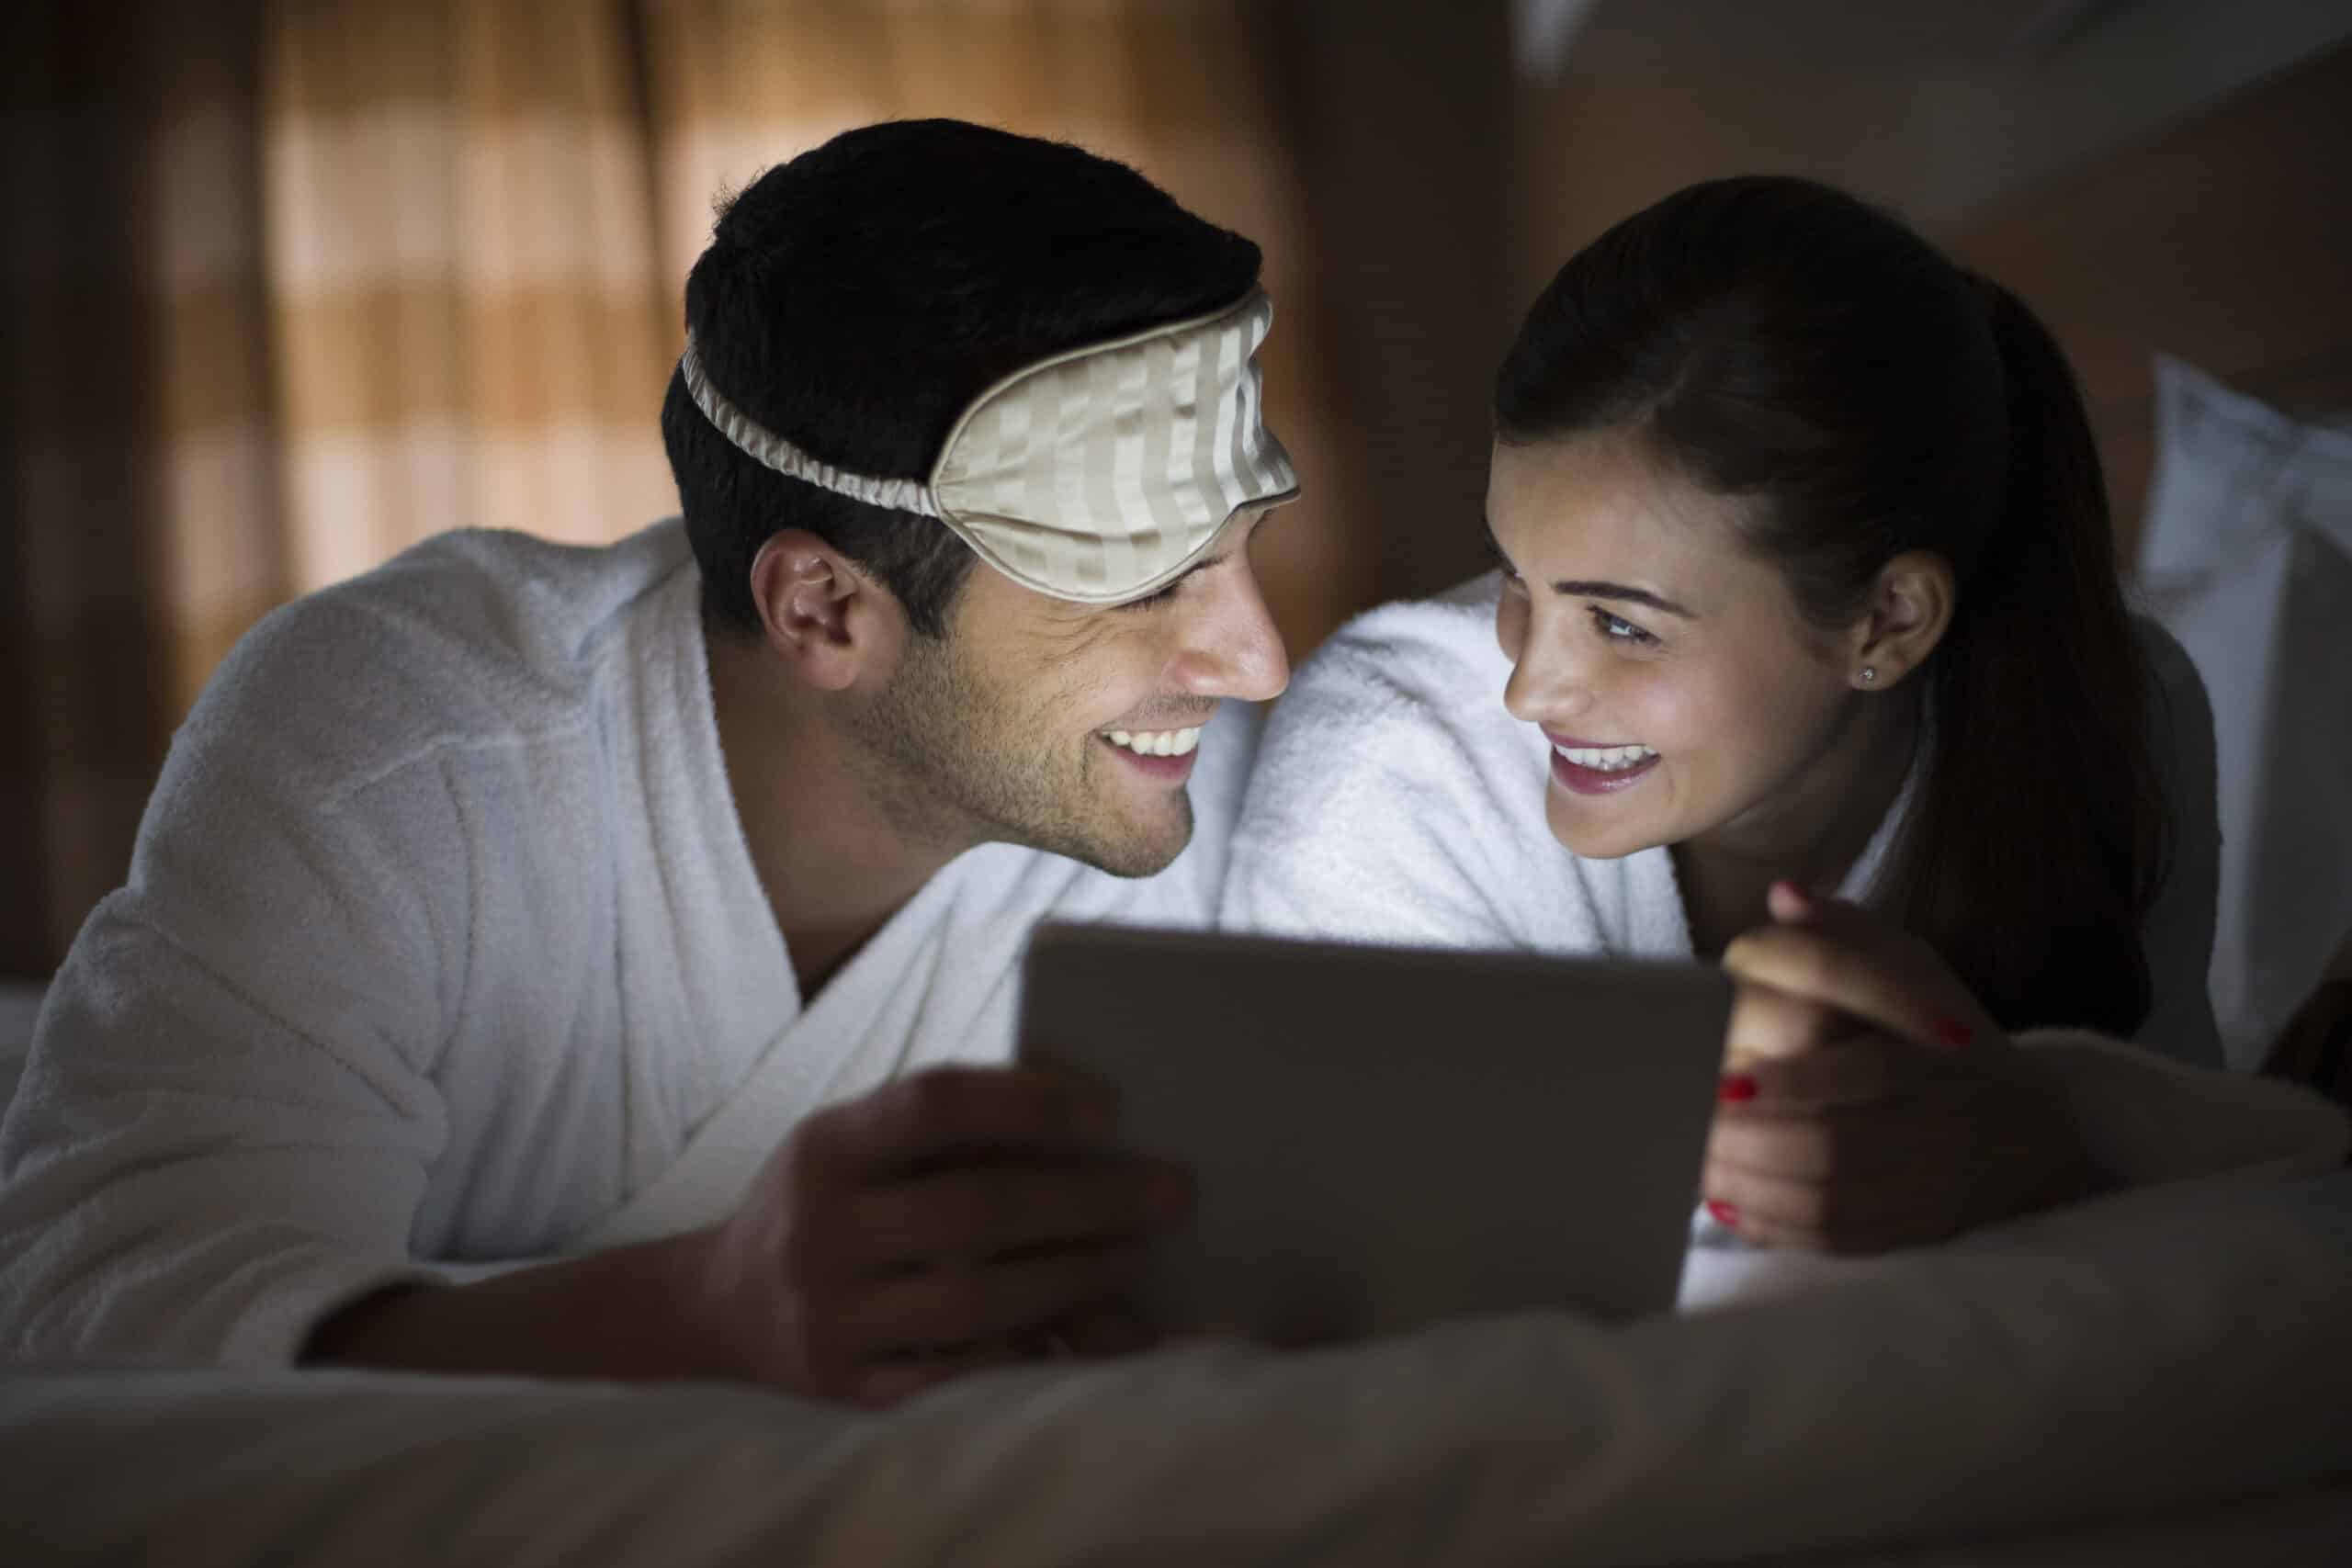 Ein lächelnder Mann und eine lächelnde Frau in weißen Bademänteln liegen im Bett und schauen auf ein Tablet. Der Mann trägt eine Augenmaske, die er auf die Stirn geschoben hat. Das Zimmer ist schwach beleuchtet, was für eine gemütliche Atmosphäre sorgt. © Fotografie Tomas Rodriguez